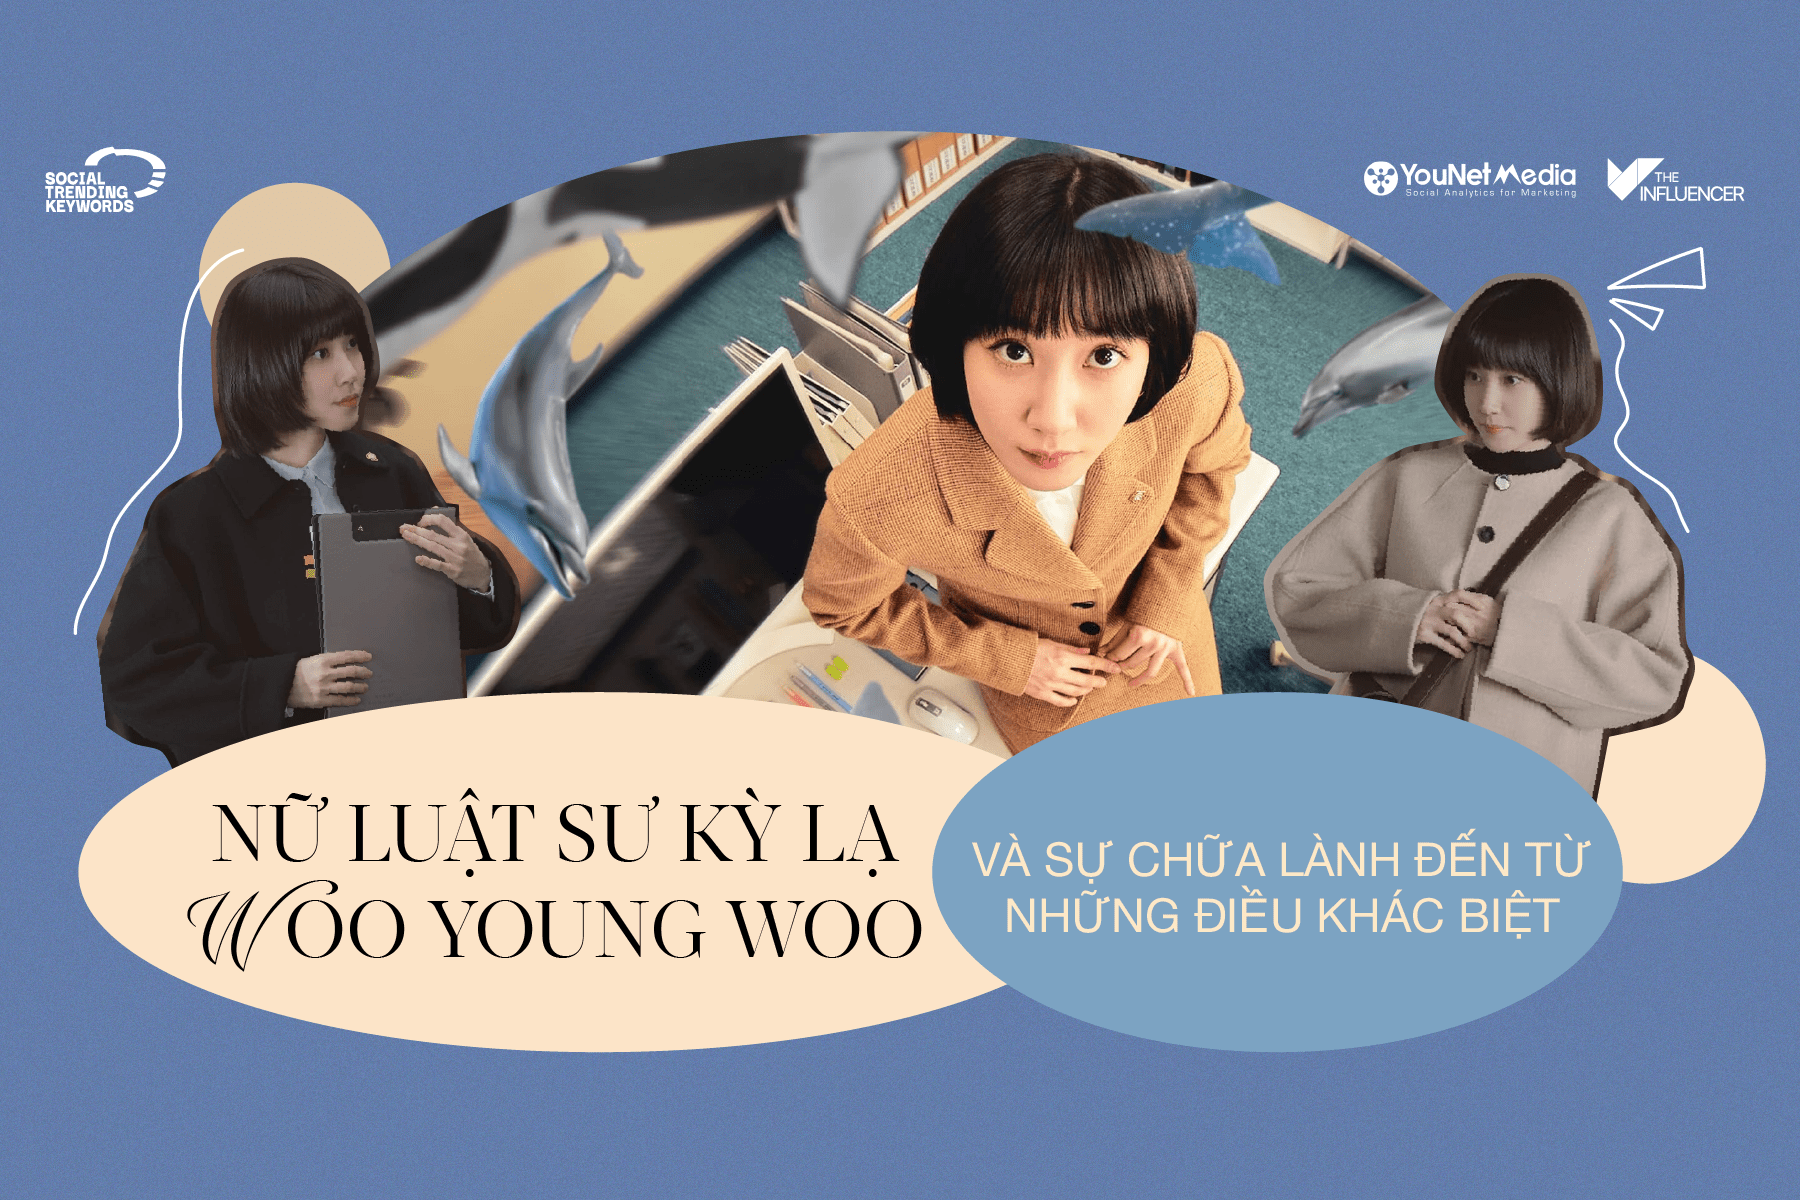 #SocialTrendingKeywords: Nữ luật sư kỳ lạ Woo Young Woo và sự chữa lành đến từ những điều khác biệt